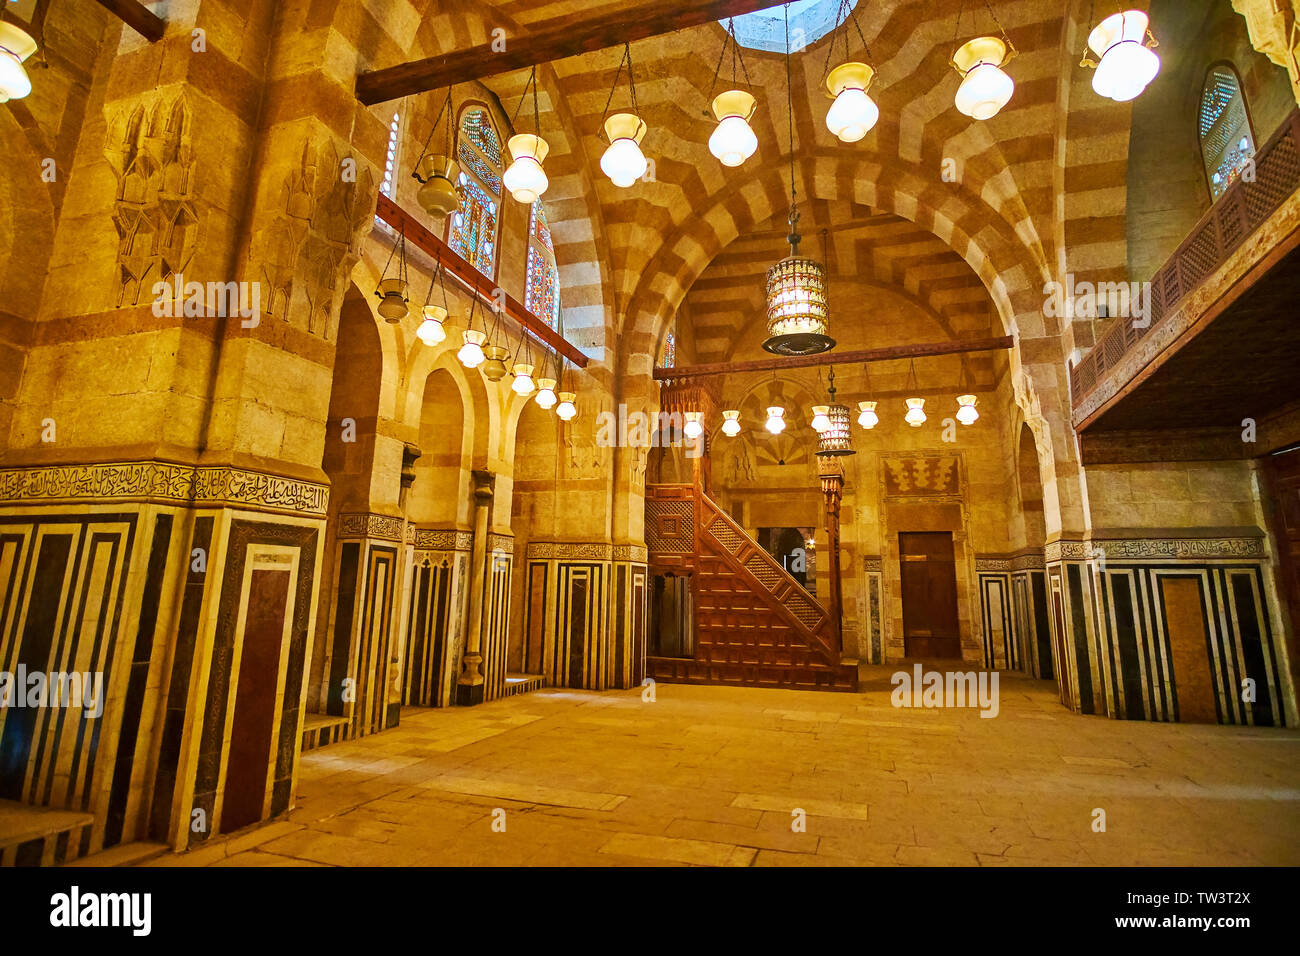 Il Cairo, Egitto - 22 dicembre 2017: la sala di preghiera della moschea Khayrbak con ricche decorazioni in pietra, minbar in legno e lampade vintage, su dicembre 22 Foto Stock